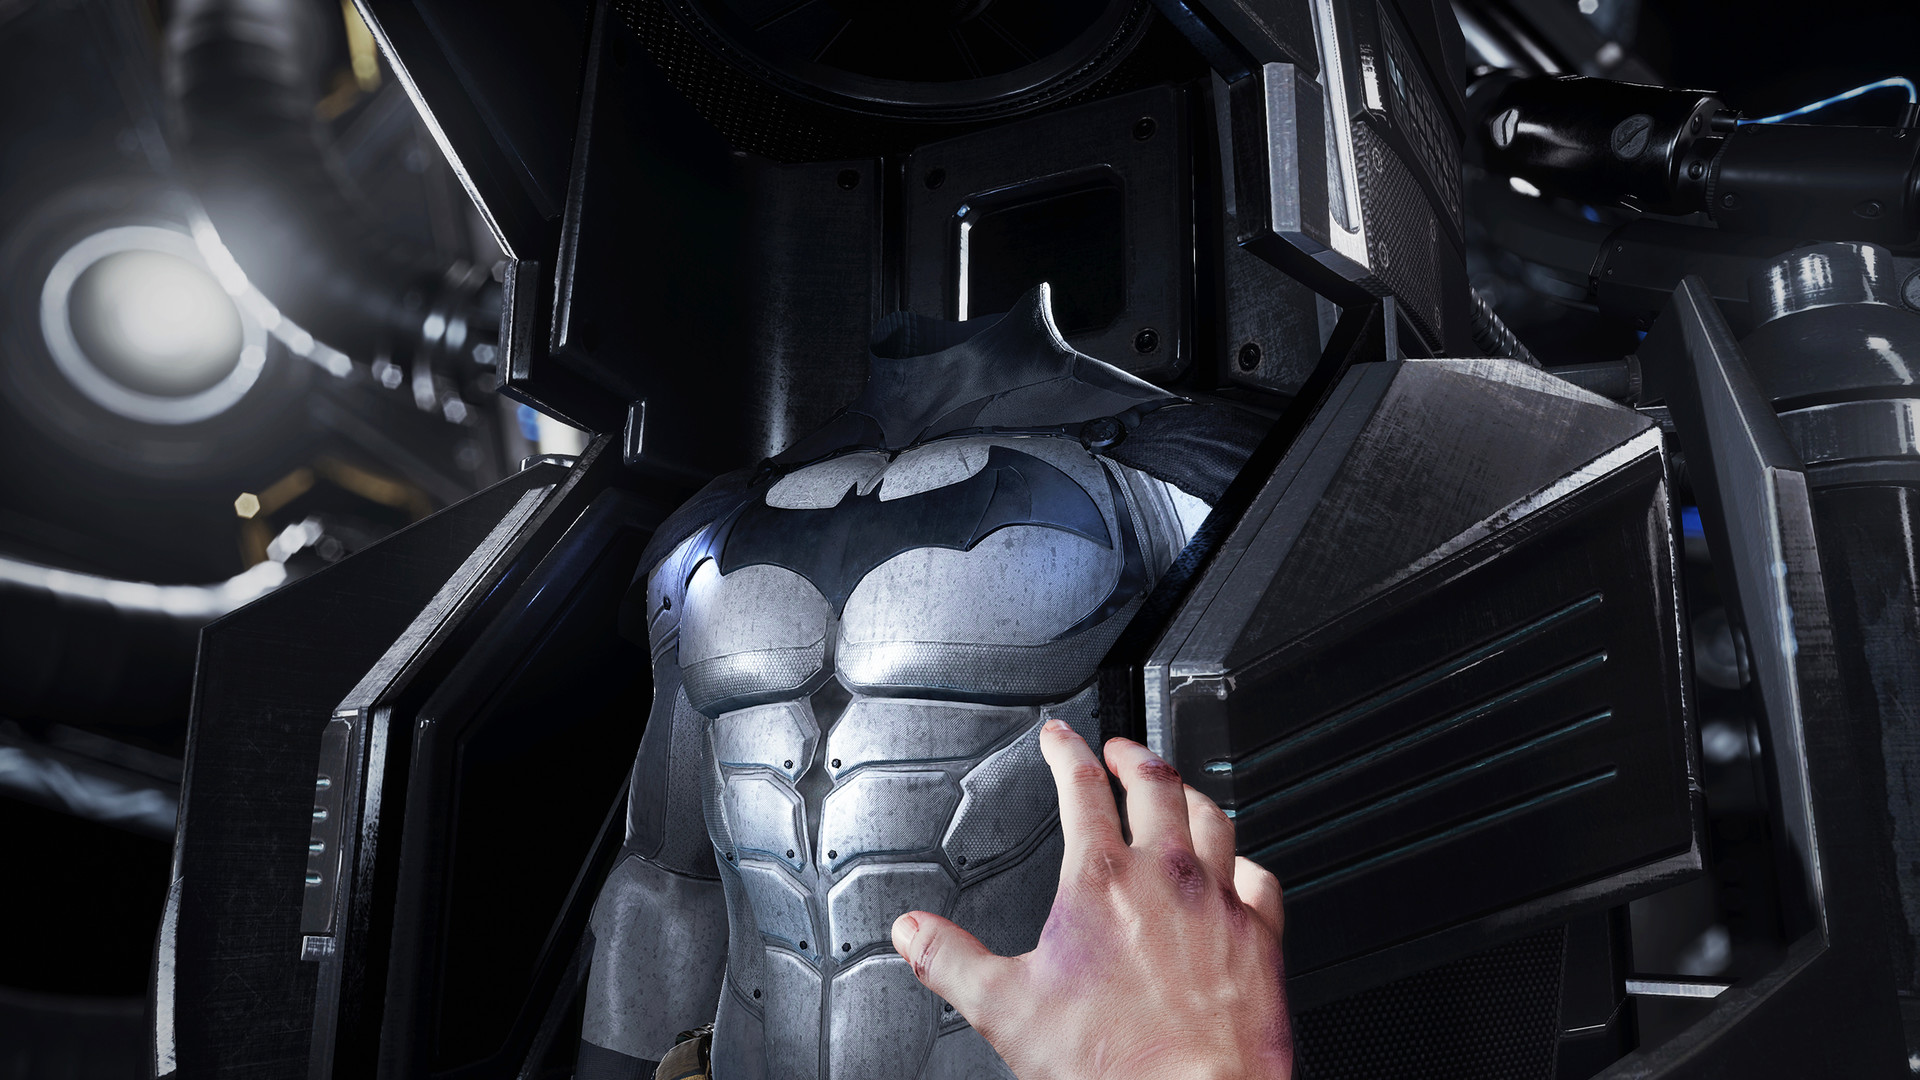 蝙蝠侠™:阿卡姆VR (Batman™: Arkham VR)